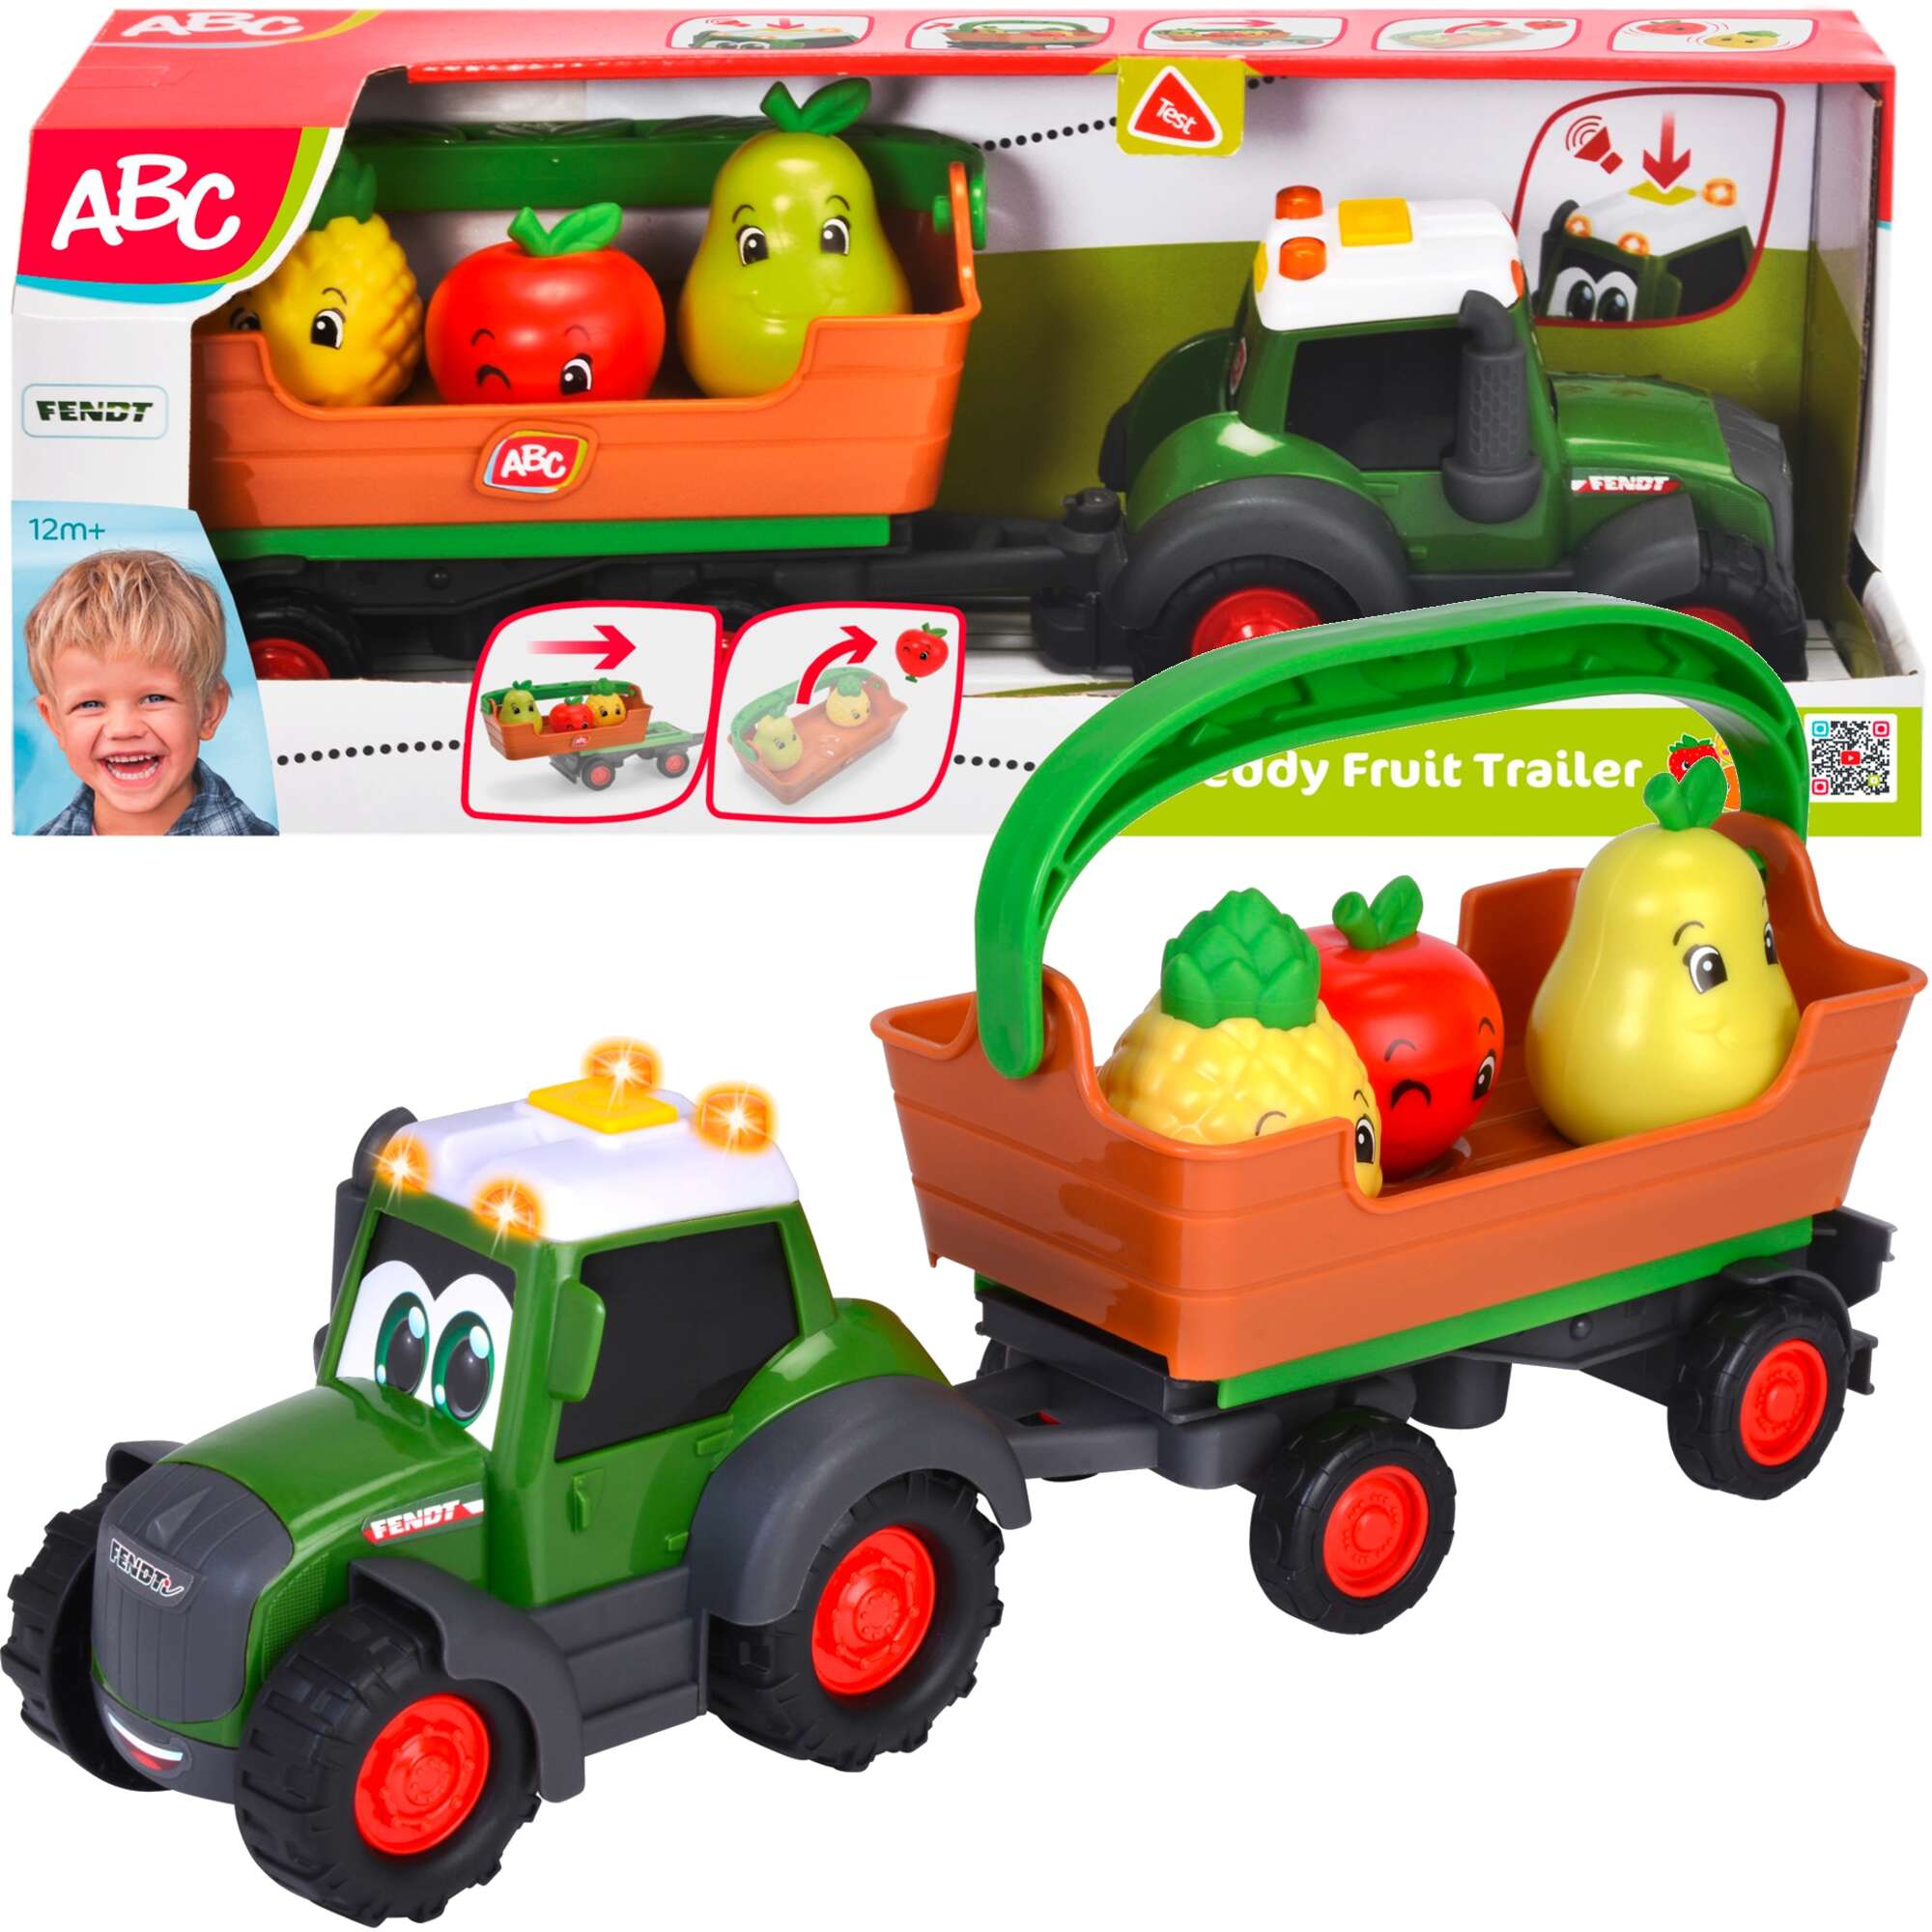 Zestaw Interaktywny Traktor z przyczep i owocami ABC Freddy Fruit Trailer Dwik wiato